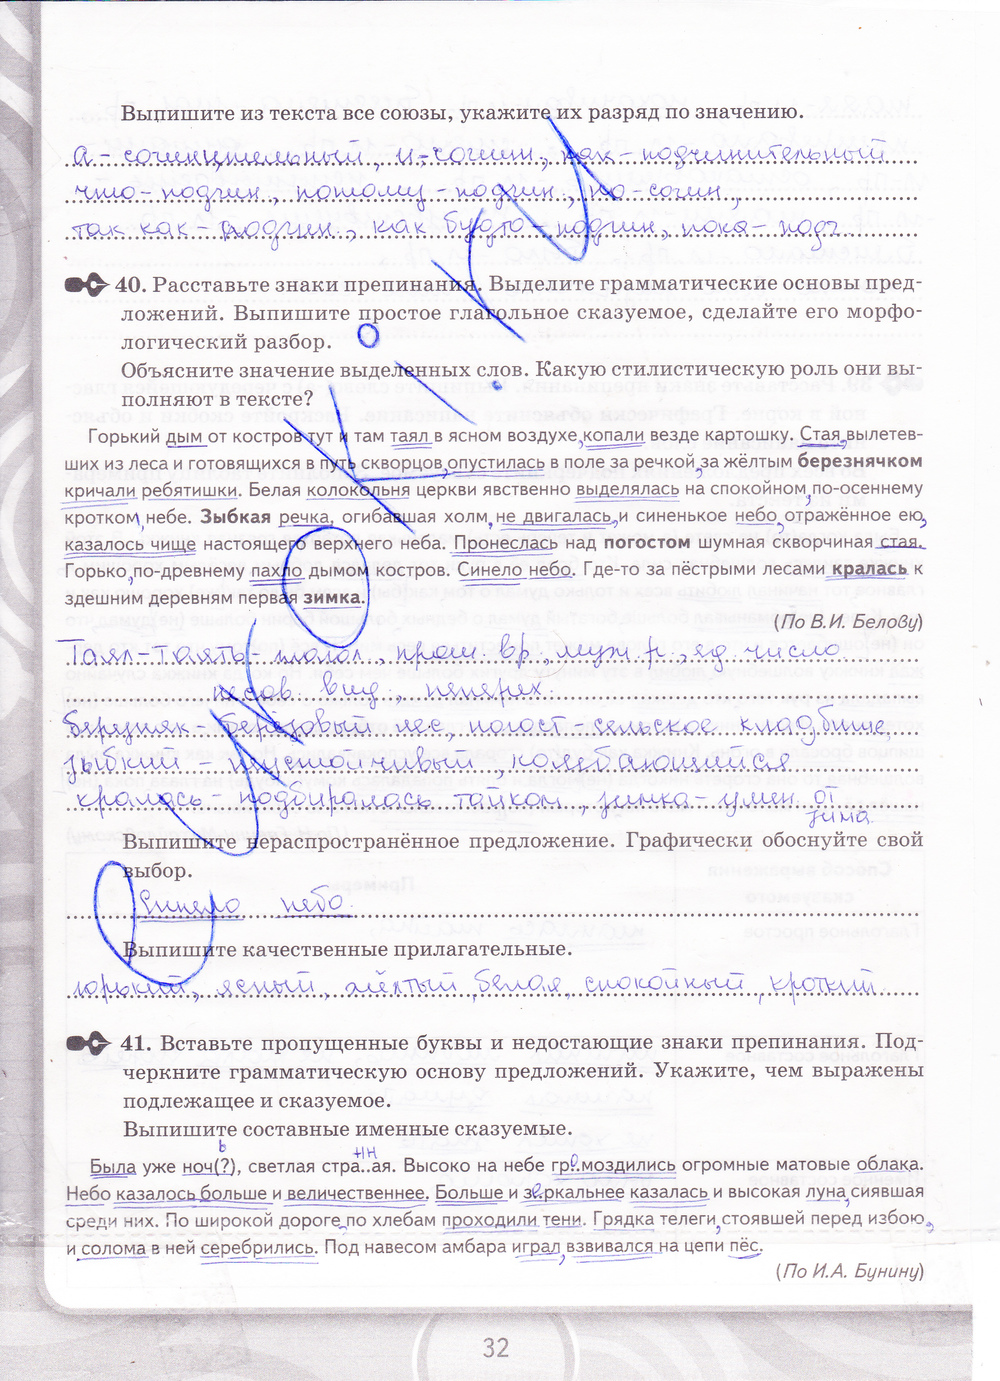 Страница (упражнение) 32 рабочей тетради. Страница 32 ГДЗ рабочая тетрадь по русскому языку 8 класс Кулаева